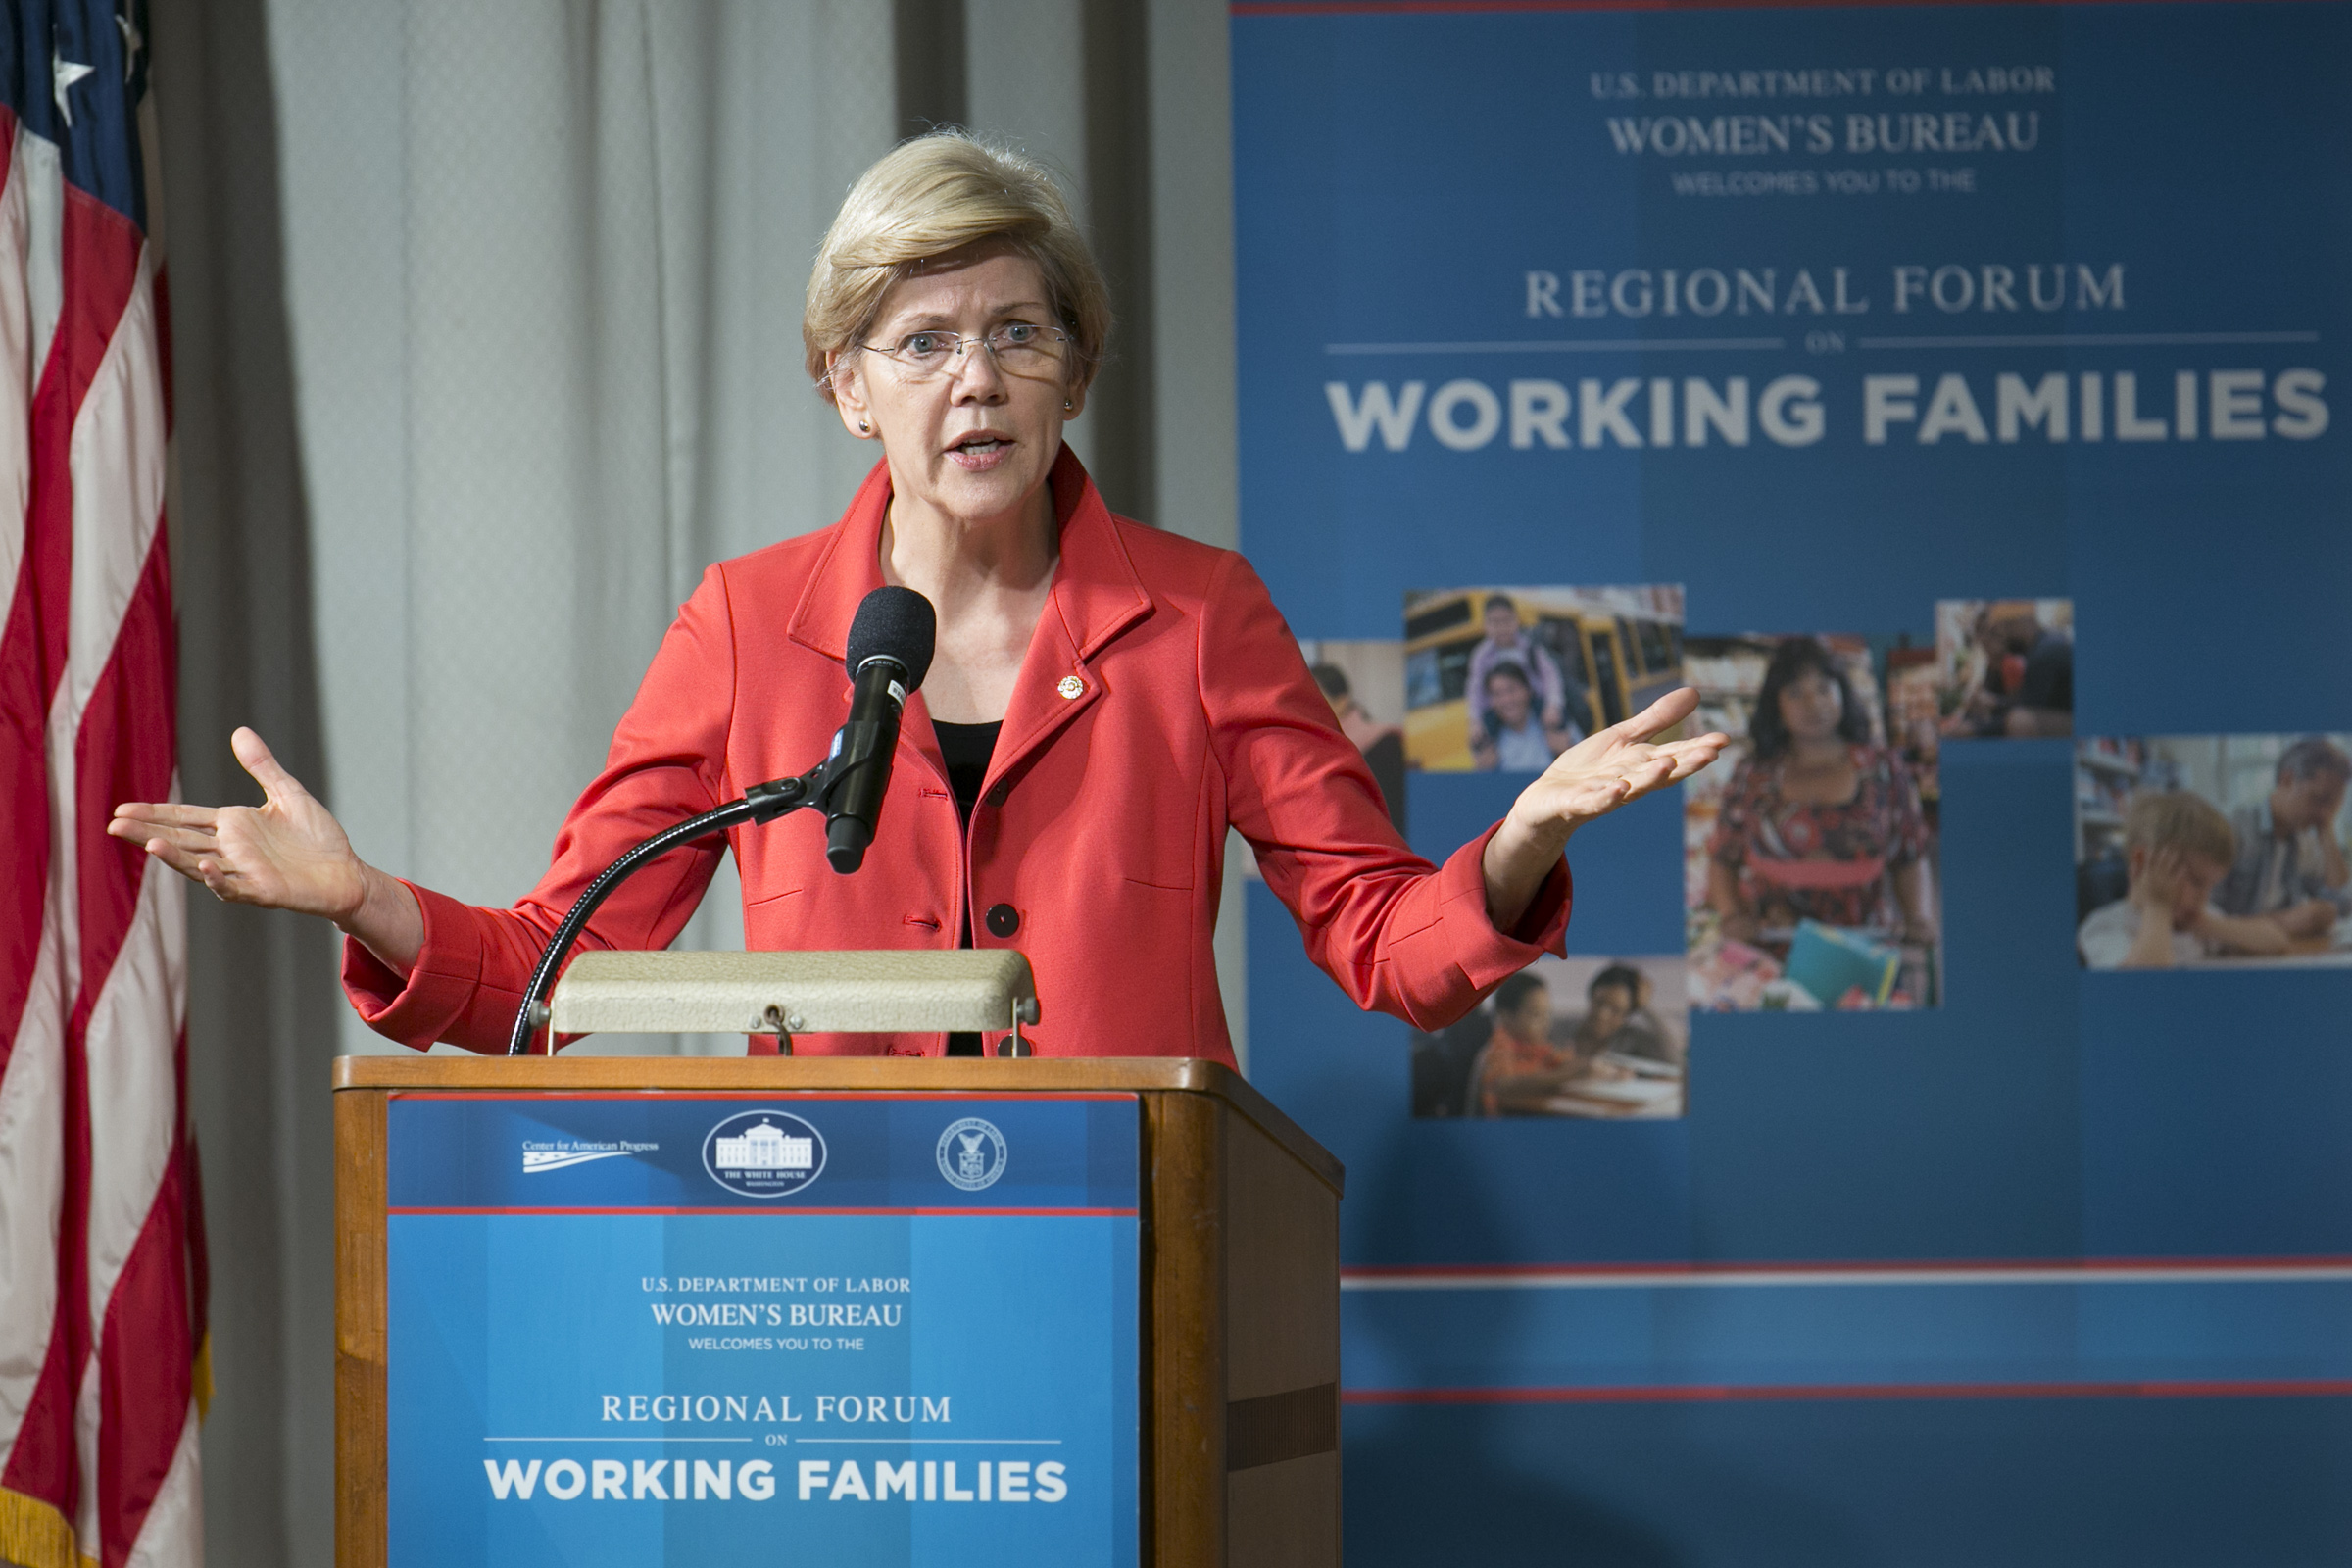 Elizabeth Warren speaking at a podium